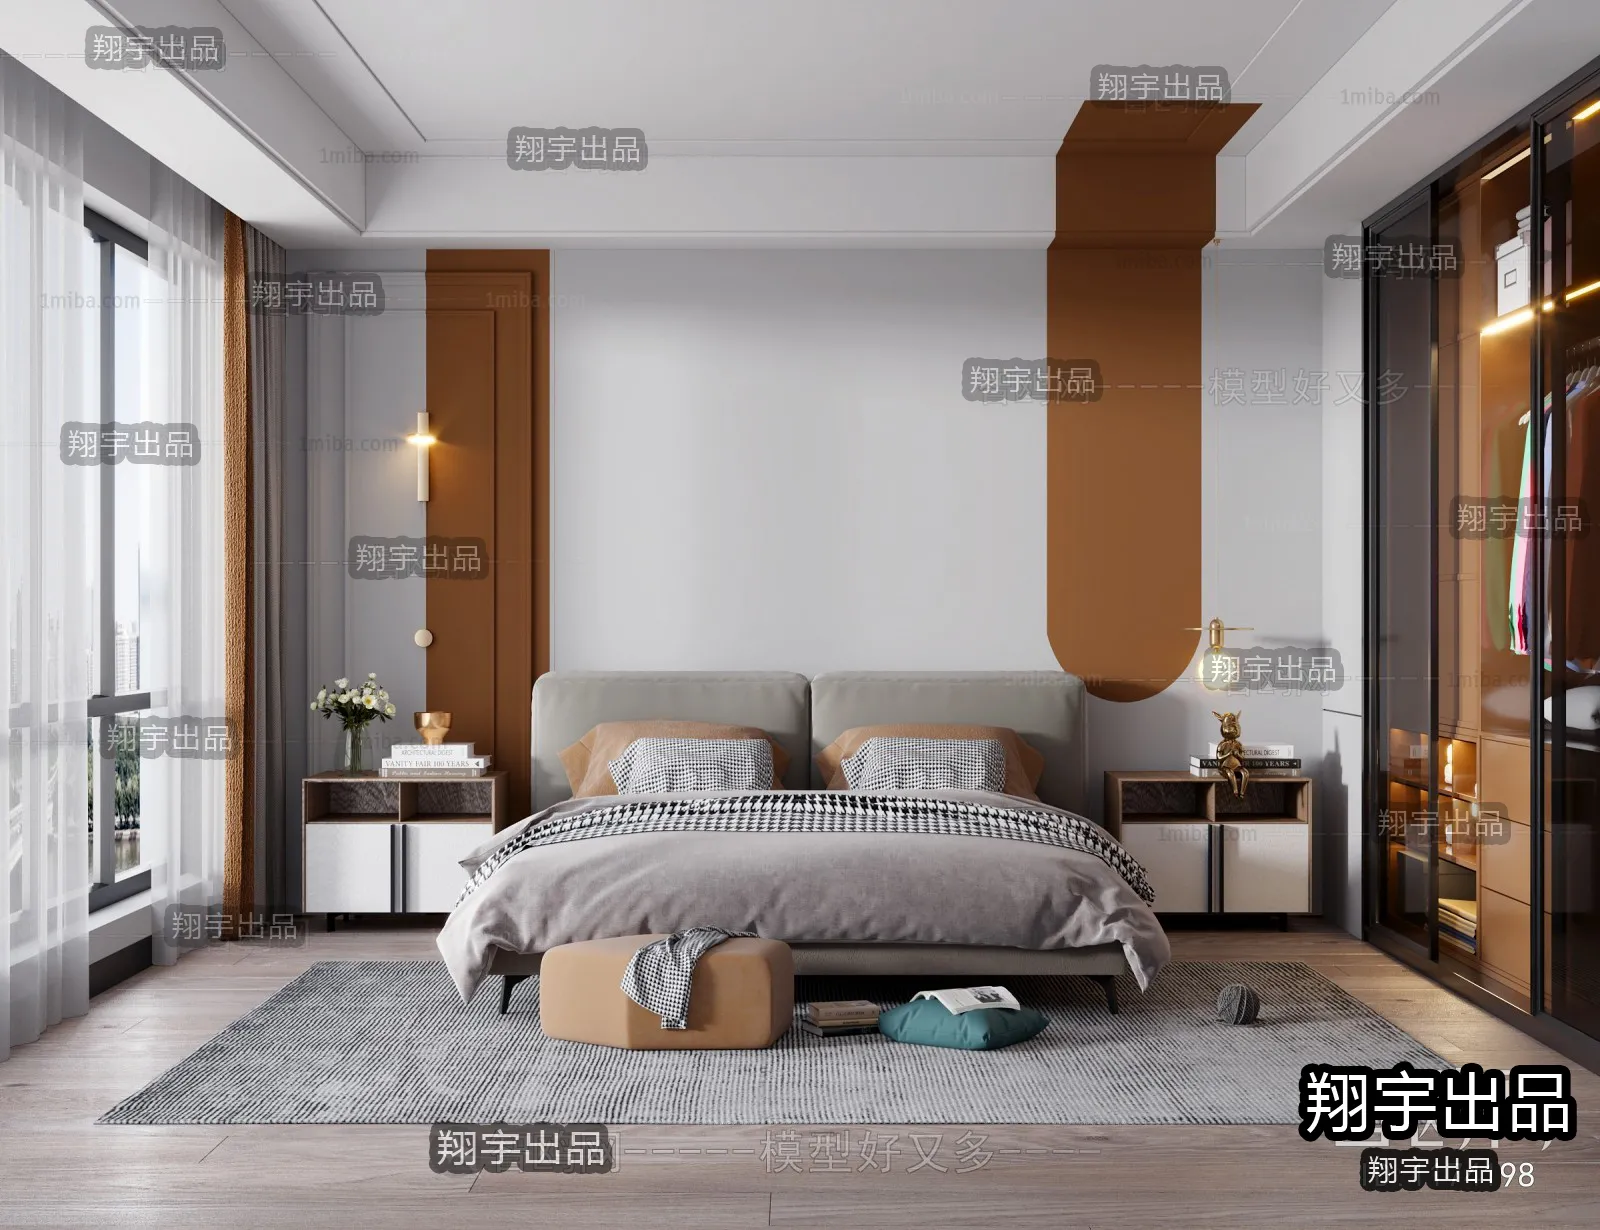 Bedroom – Scandinavian architecture – 003